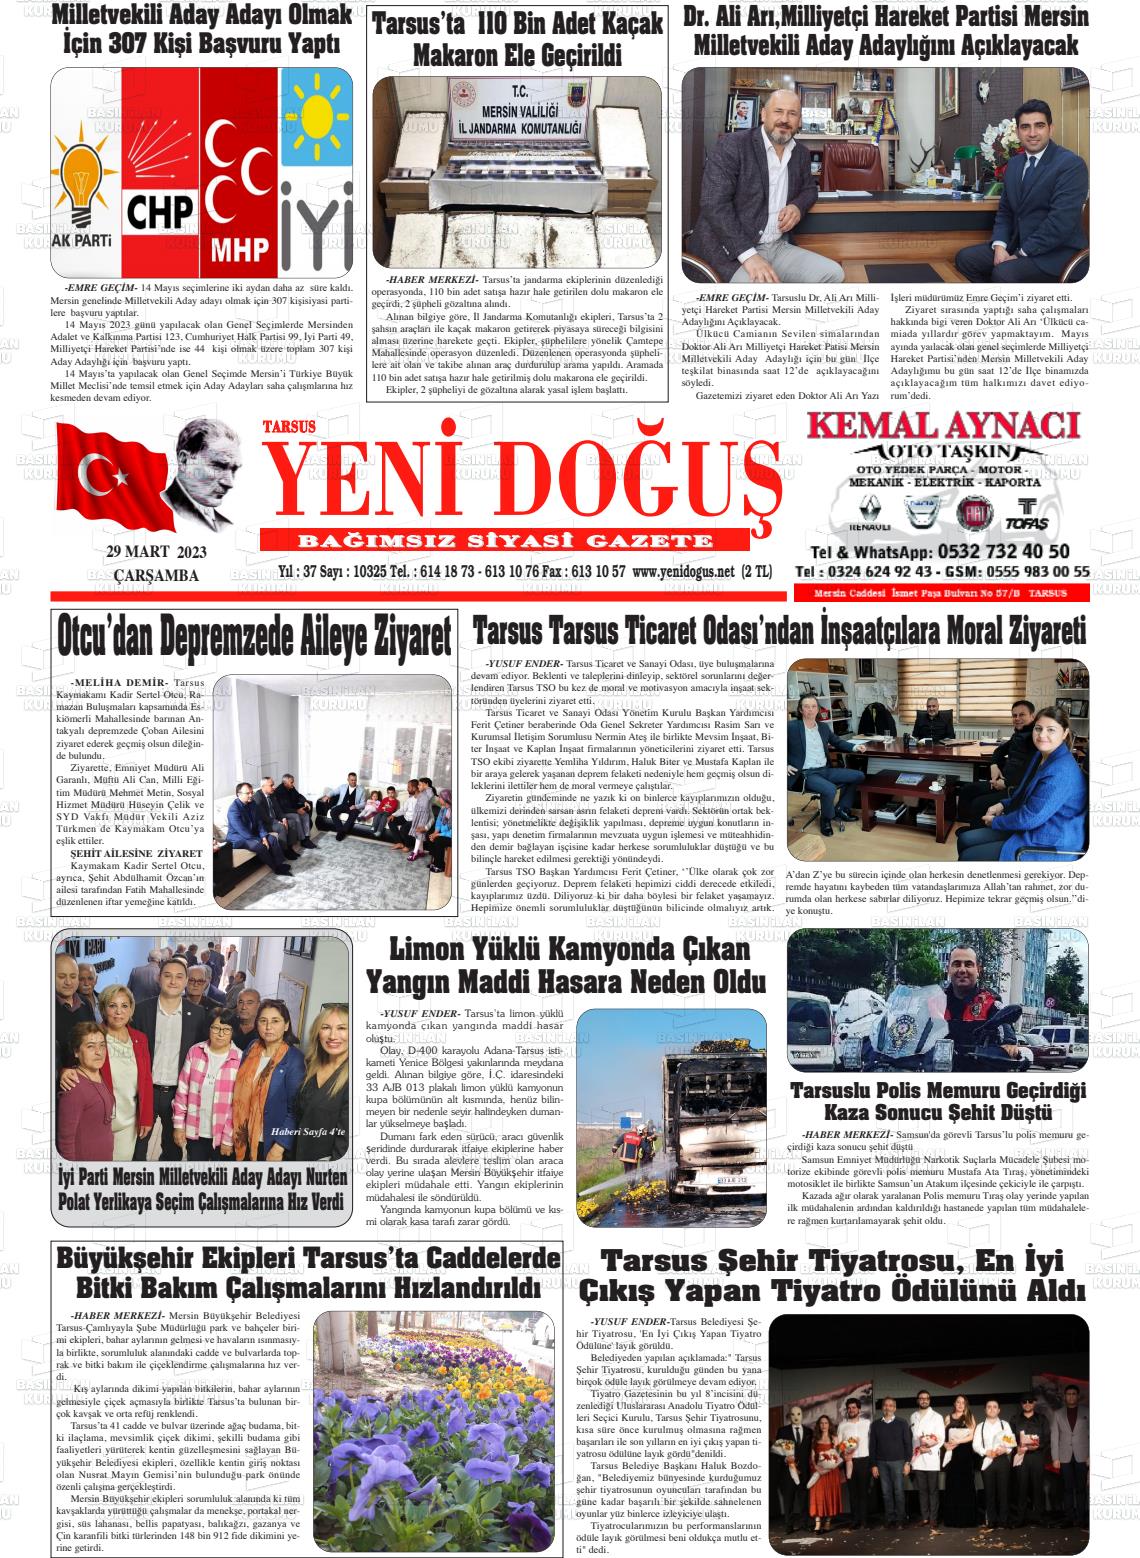 29 Mart 2023 Tarsus Yeni Doğuş Gazete Manşeti